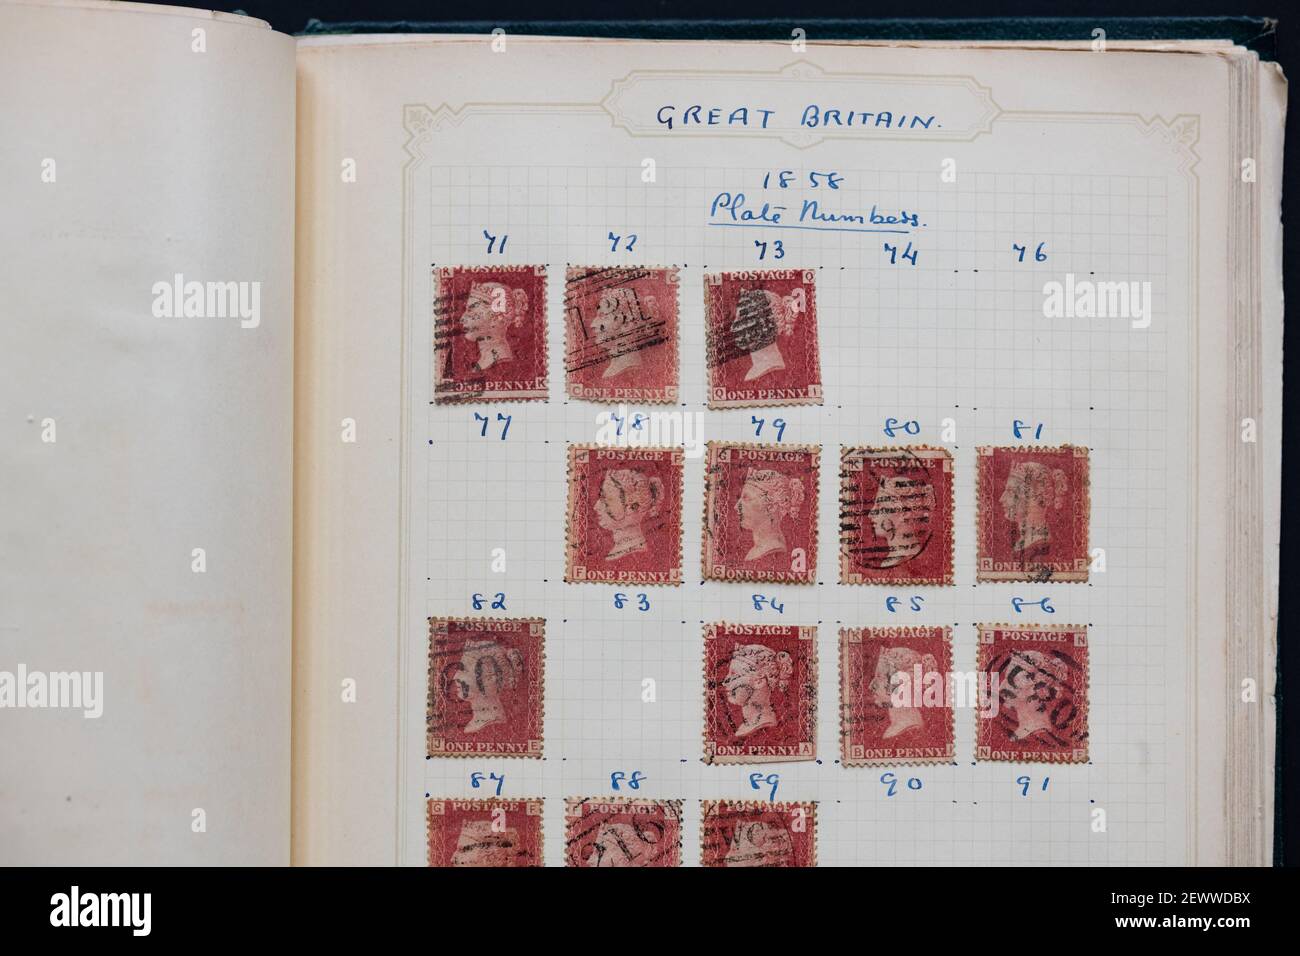 Penny Red stamps dans l'ancien album de timbres - Royaume-Uni Banque D'Images